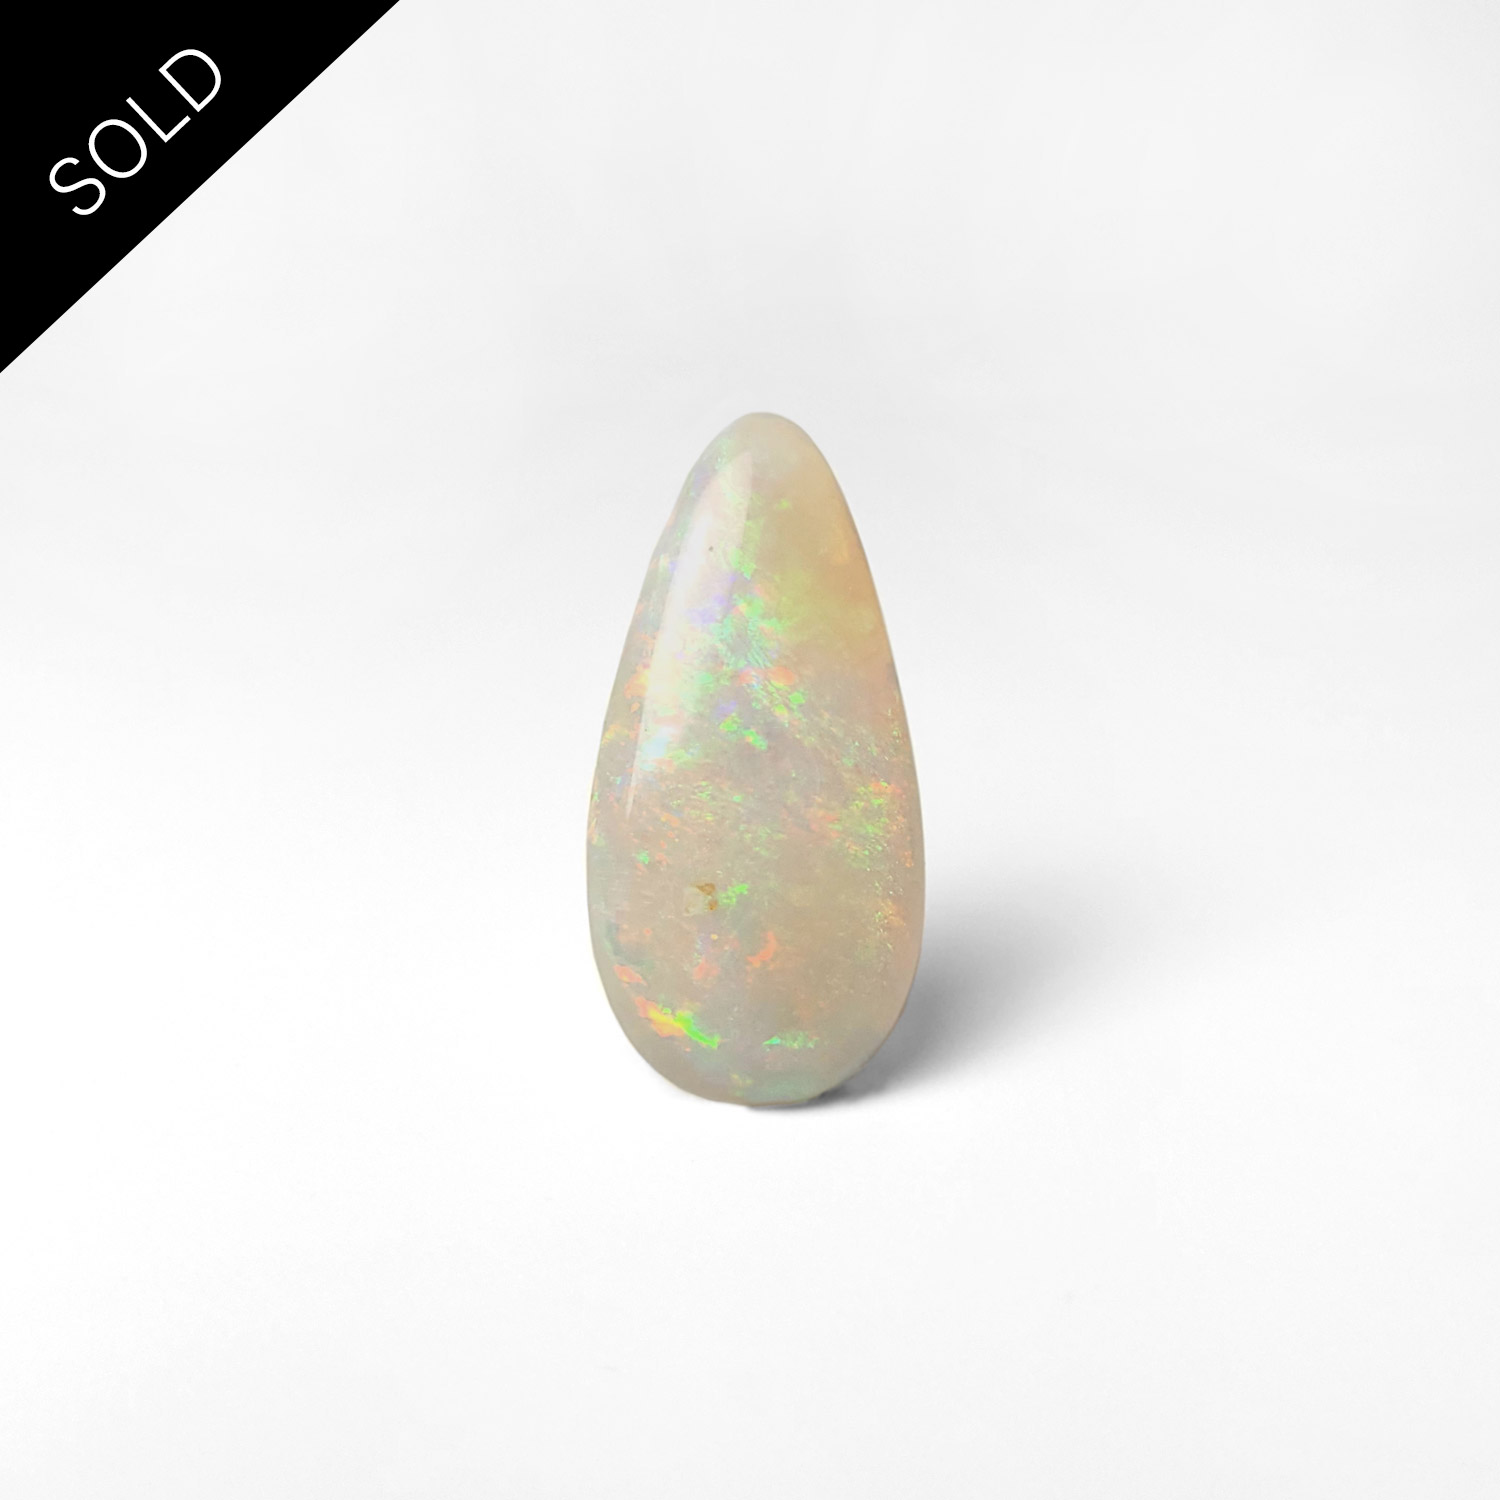 Dieser nachhaltige bunte Edelstein ist ein Opal aus Australien, geschliffen von Schütt.